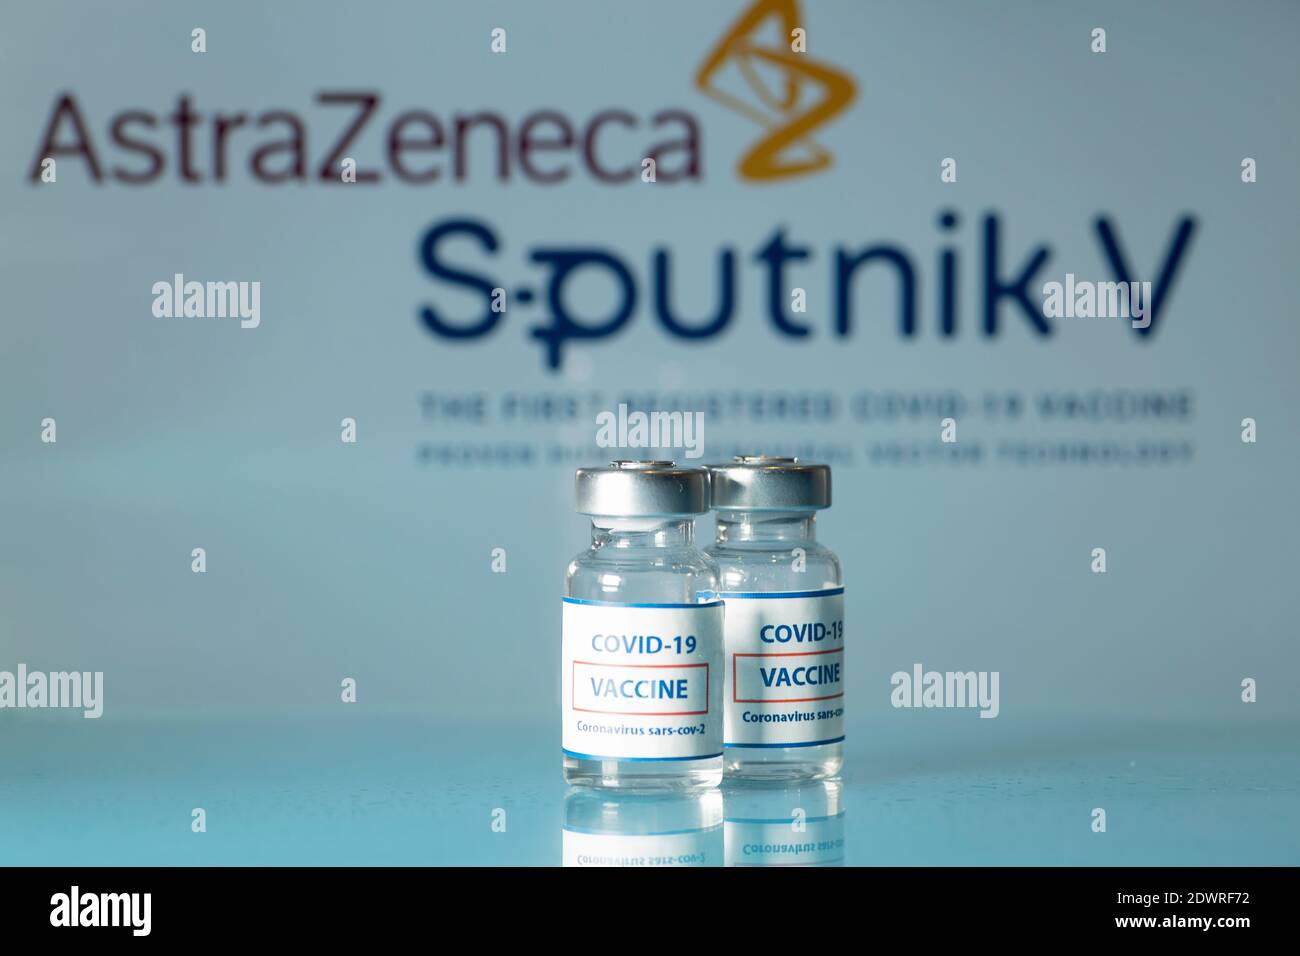 AstraZeneca-Impfstoff gegen COVID-19. Medizinische Glasfläschchen mit Flüssigkeit auf dem Hintergrund Astra Zeneca Firmenlogo. Ampullen mit Coronavirus-Impfstoff o Stockfoto